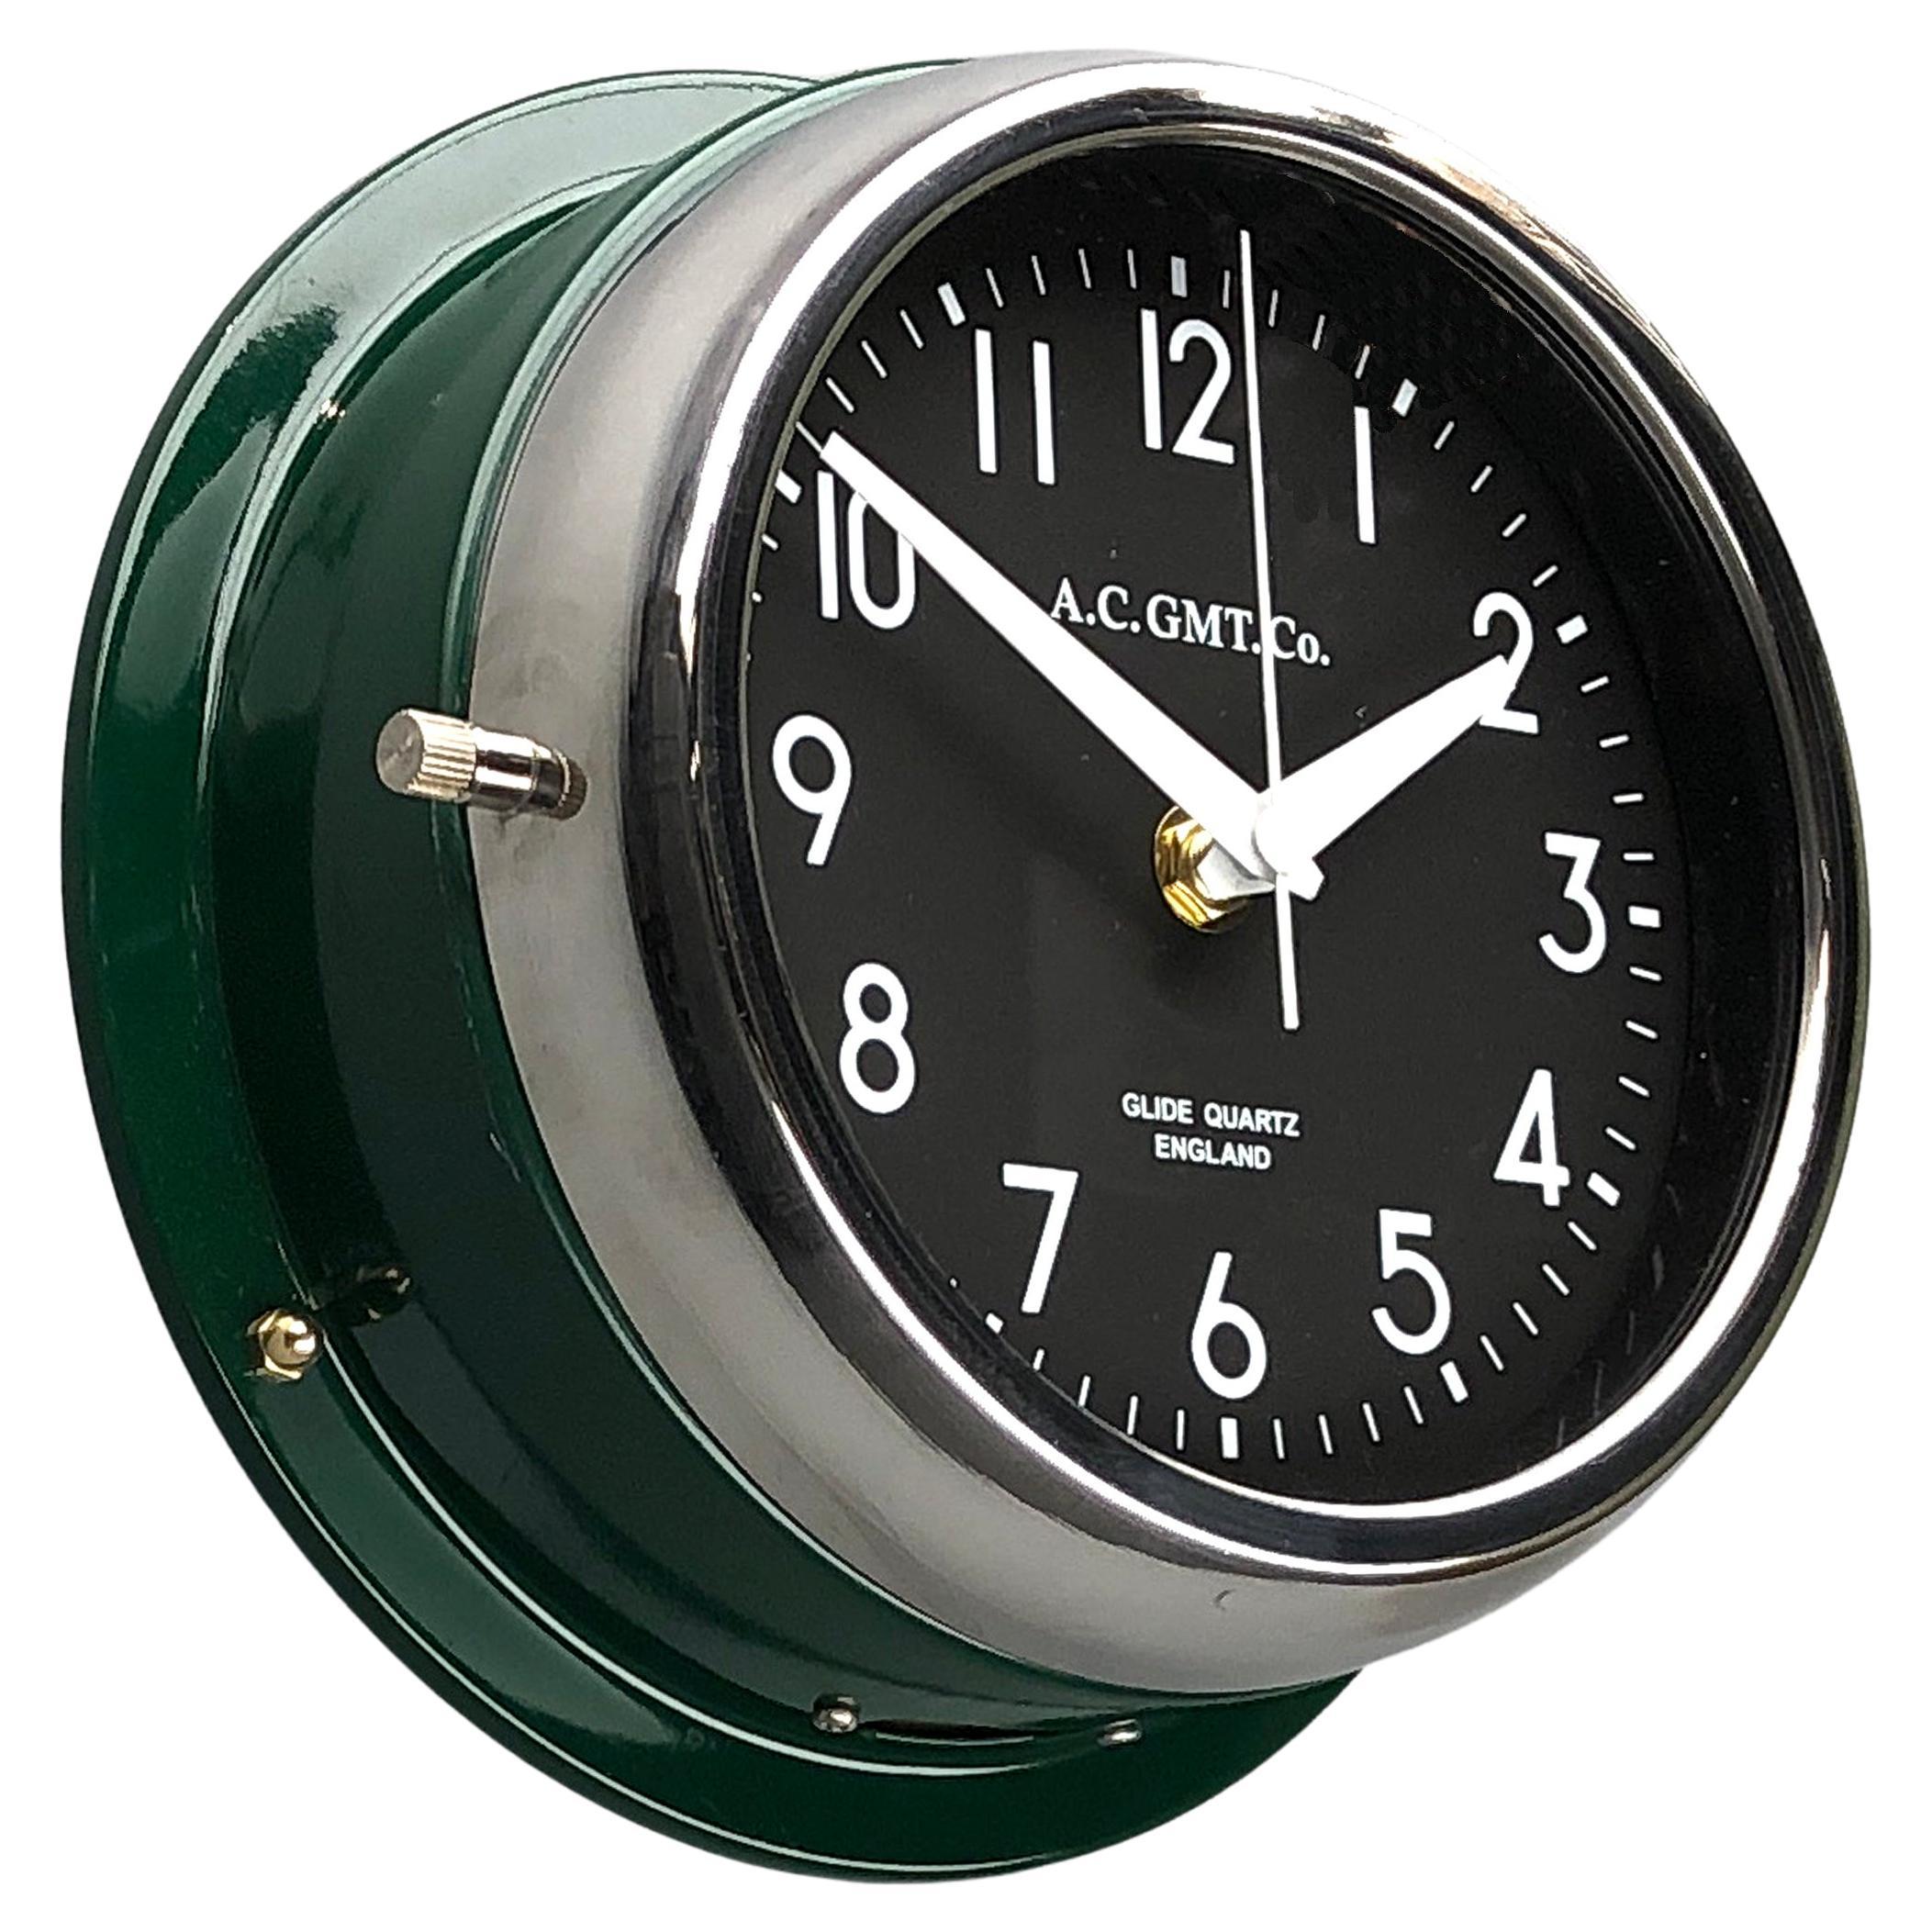 Années 1970 British Racing Green AC.GMT.CO. Horloge murale industrielle avec lunette chromée 